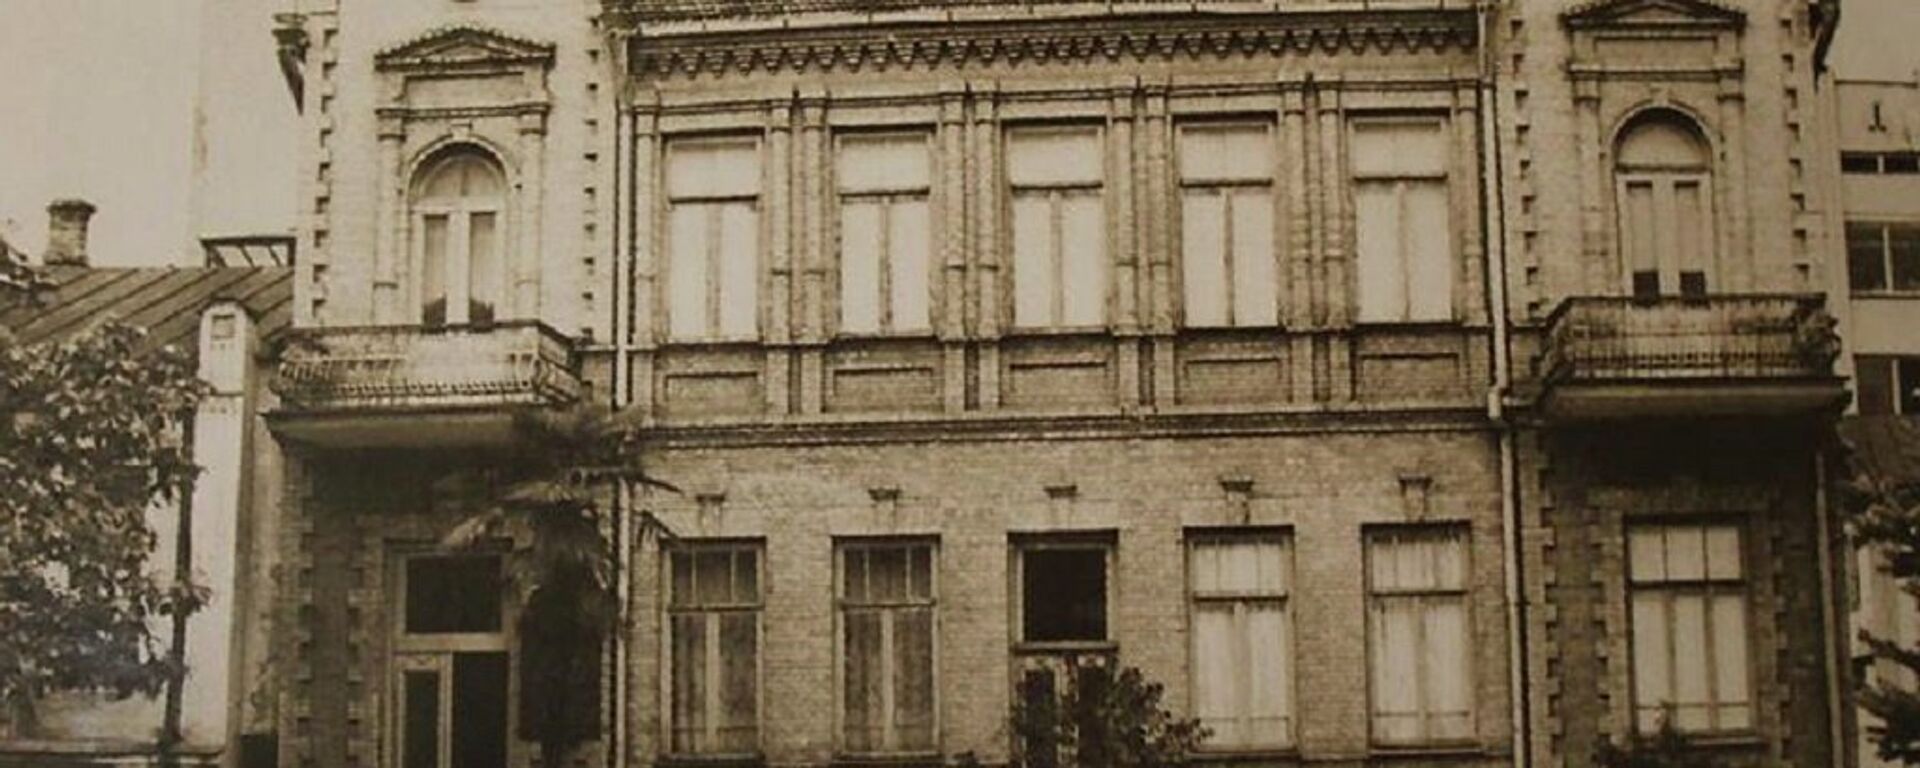 Дом Нестора Лакоба в Сухуме. Архивное фото. - Sputnik Абхазия, 1920, 11.06.2016